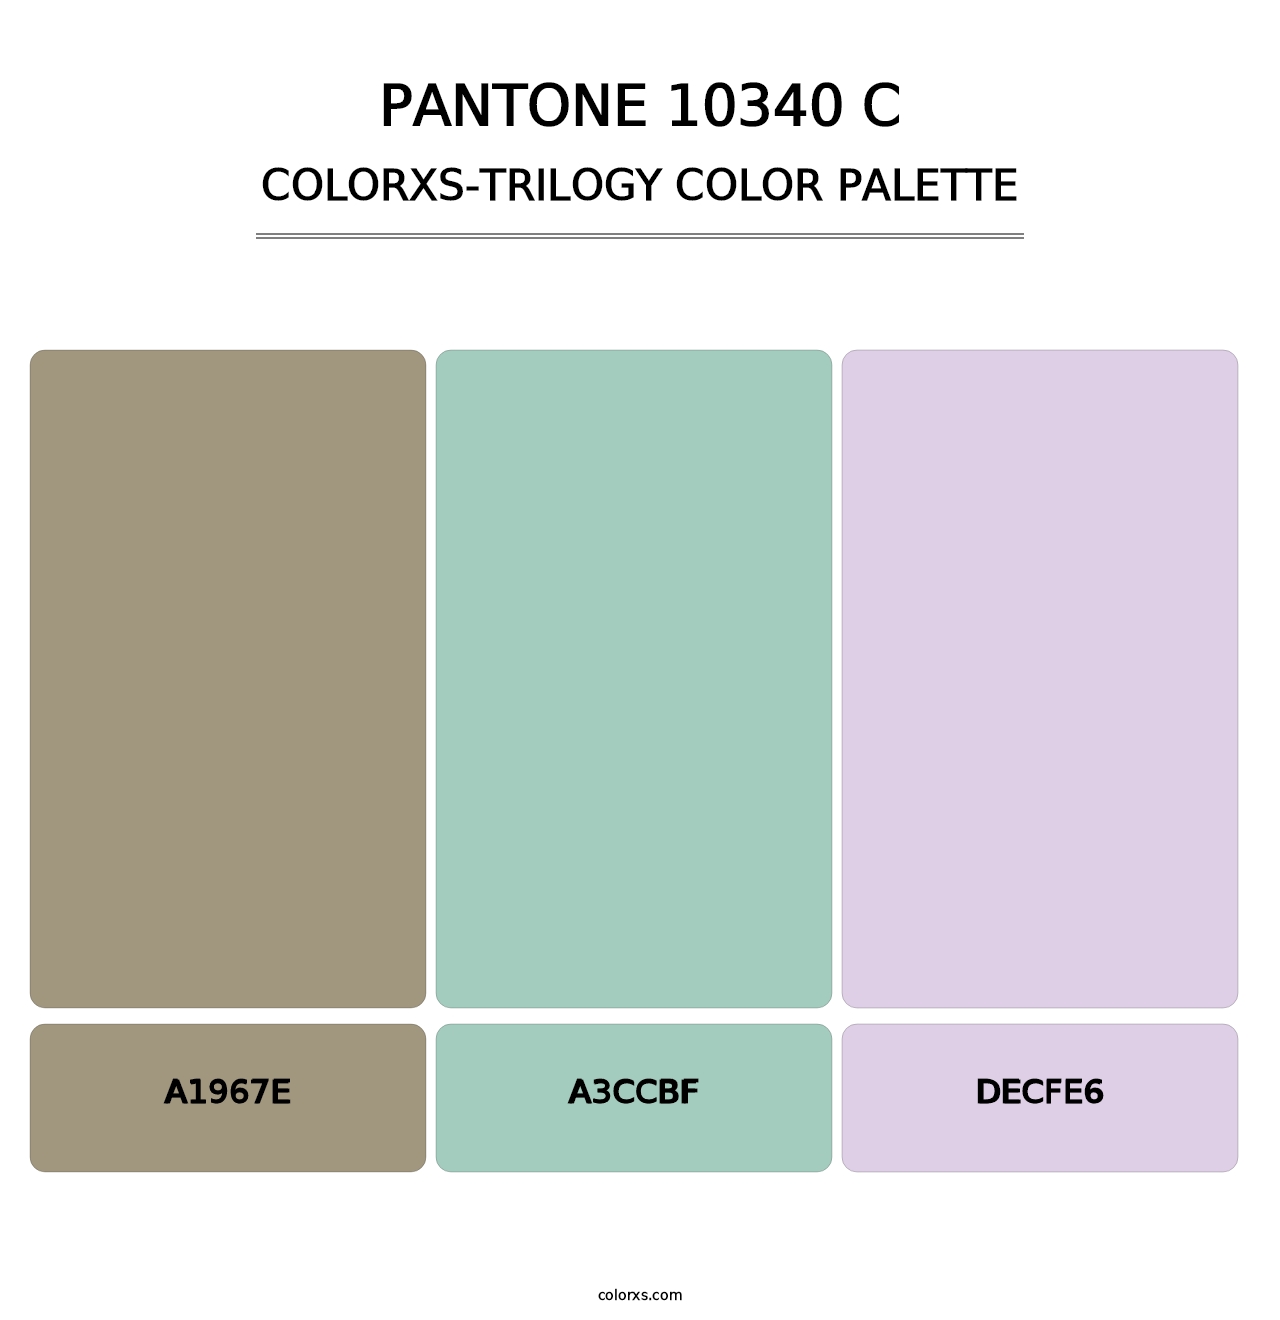 PANTONE 10340 C - Colorxs Trilogy Palette